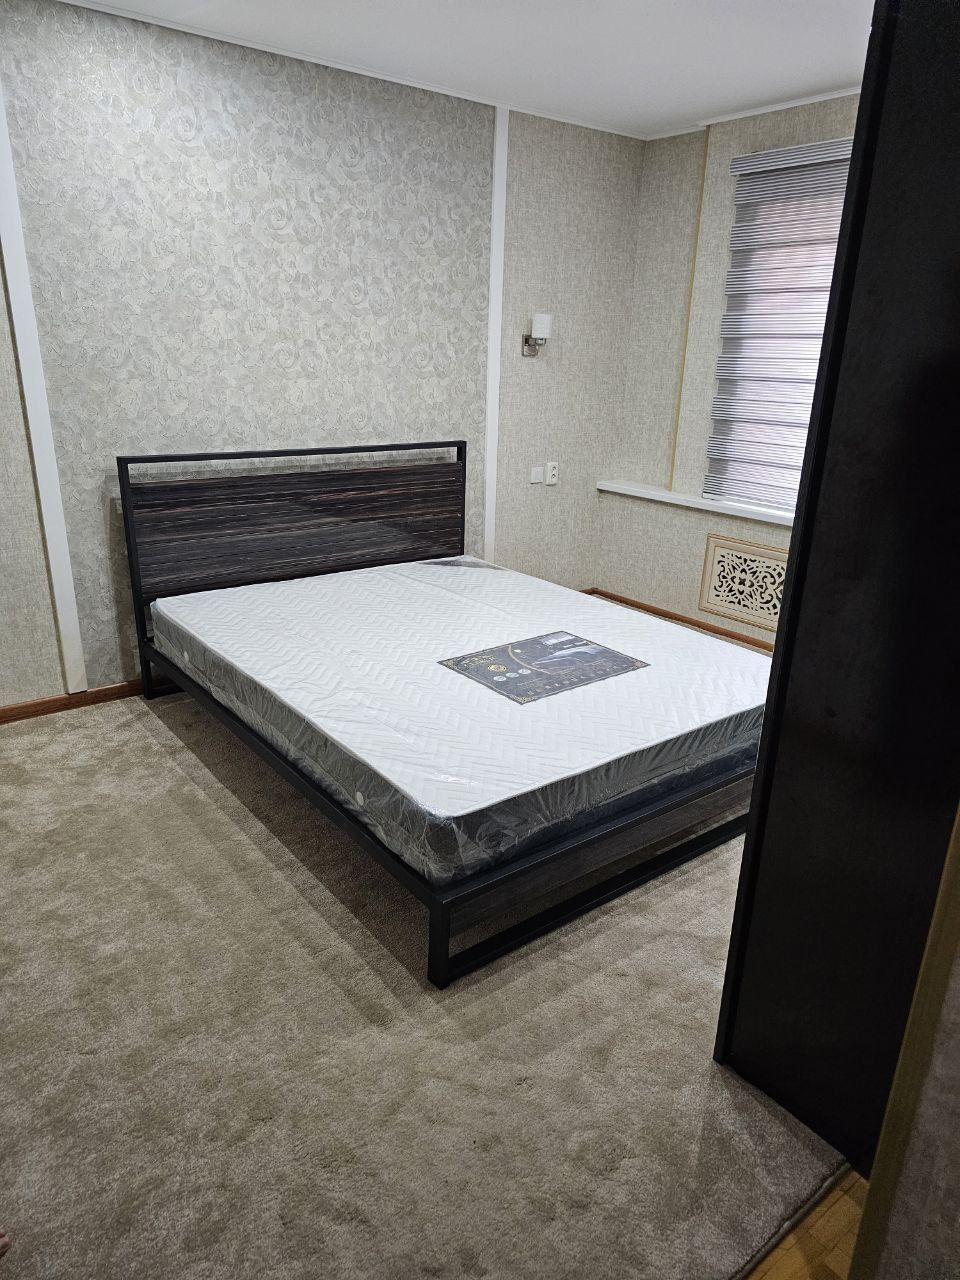 Kravat (ДИАМОНД) кровать металлическая лофт стиле от производителя